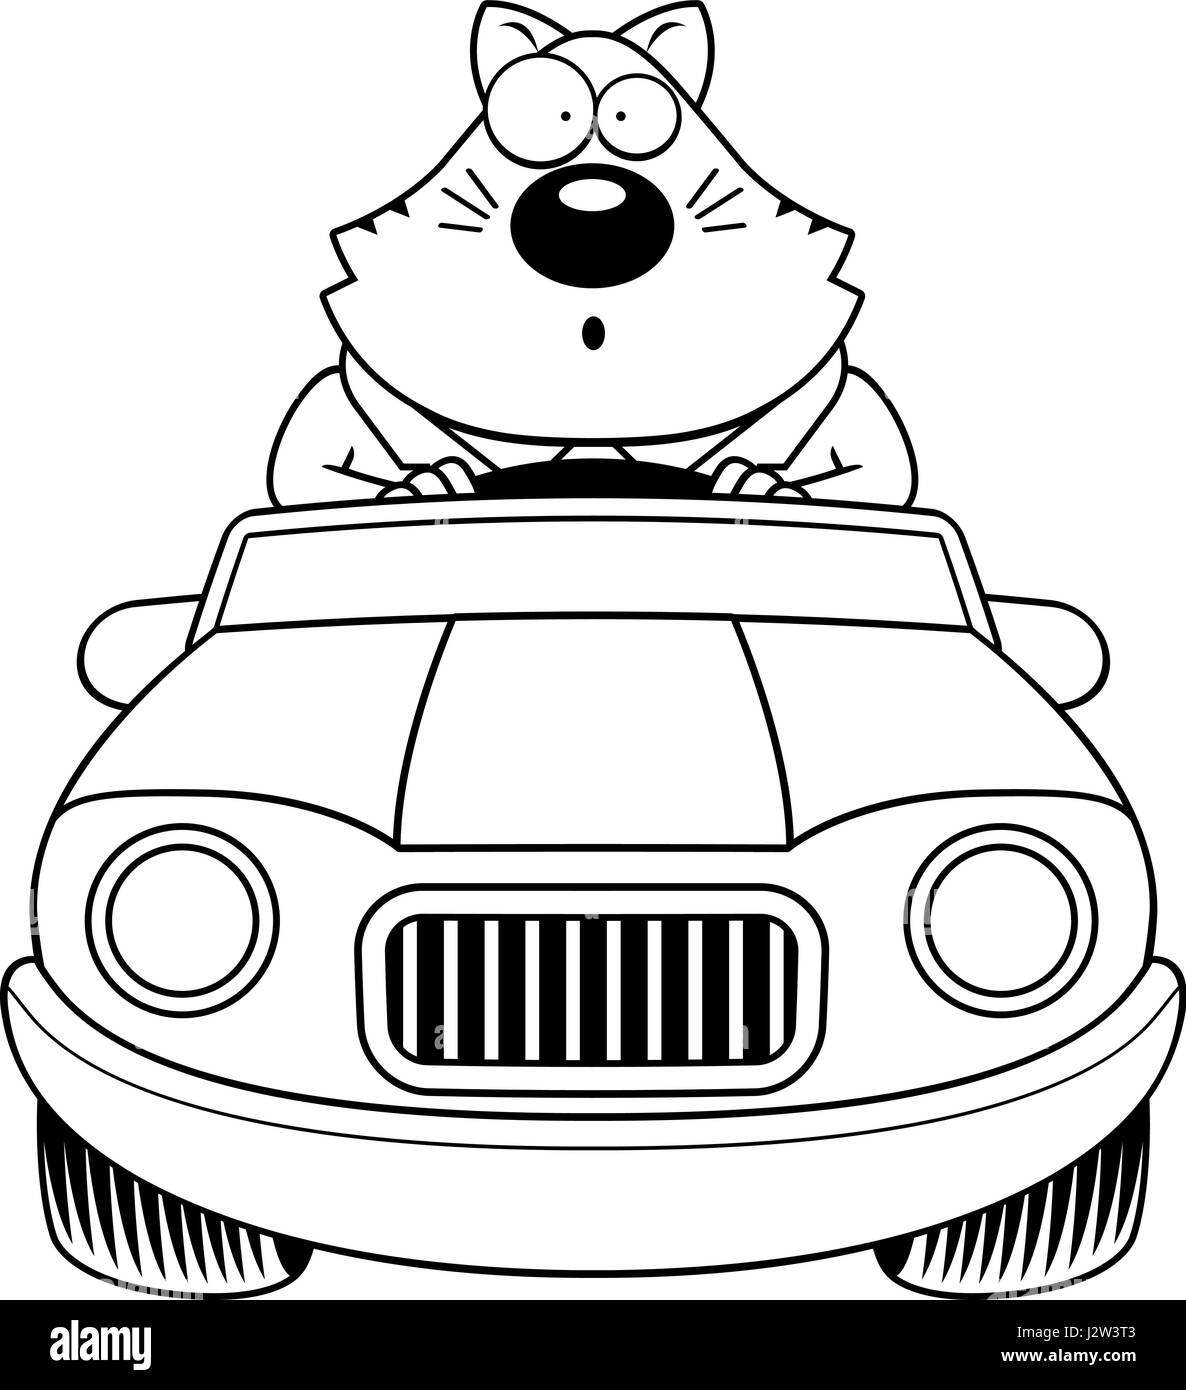 Un cartoon illustration d'un gros chat à la conduite d'une voiture et à la surprise. Illustration de Vecteur